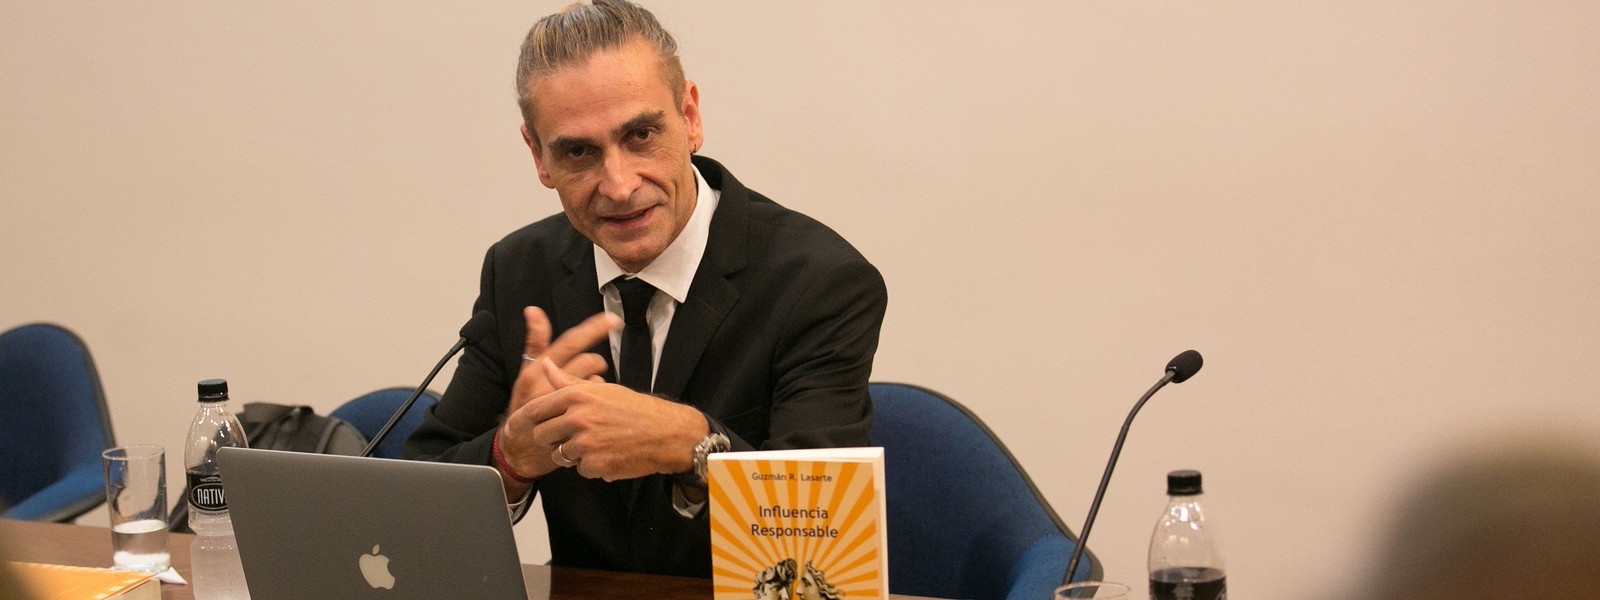 Guzmán Lasarte, Licenciado en Gerencia y Administración, presentó su libro